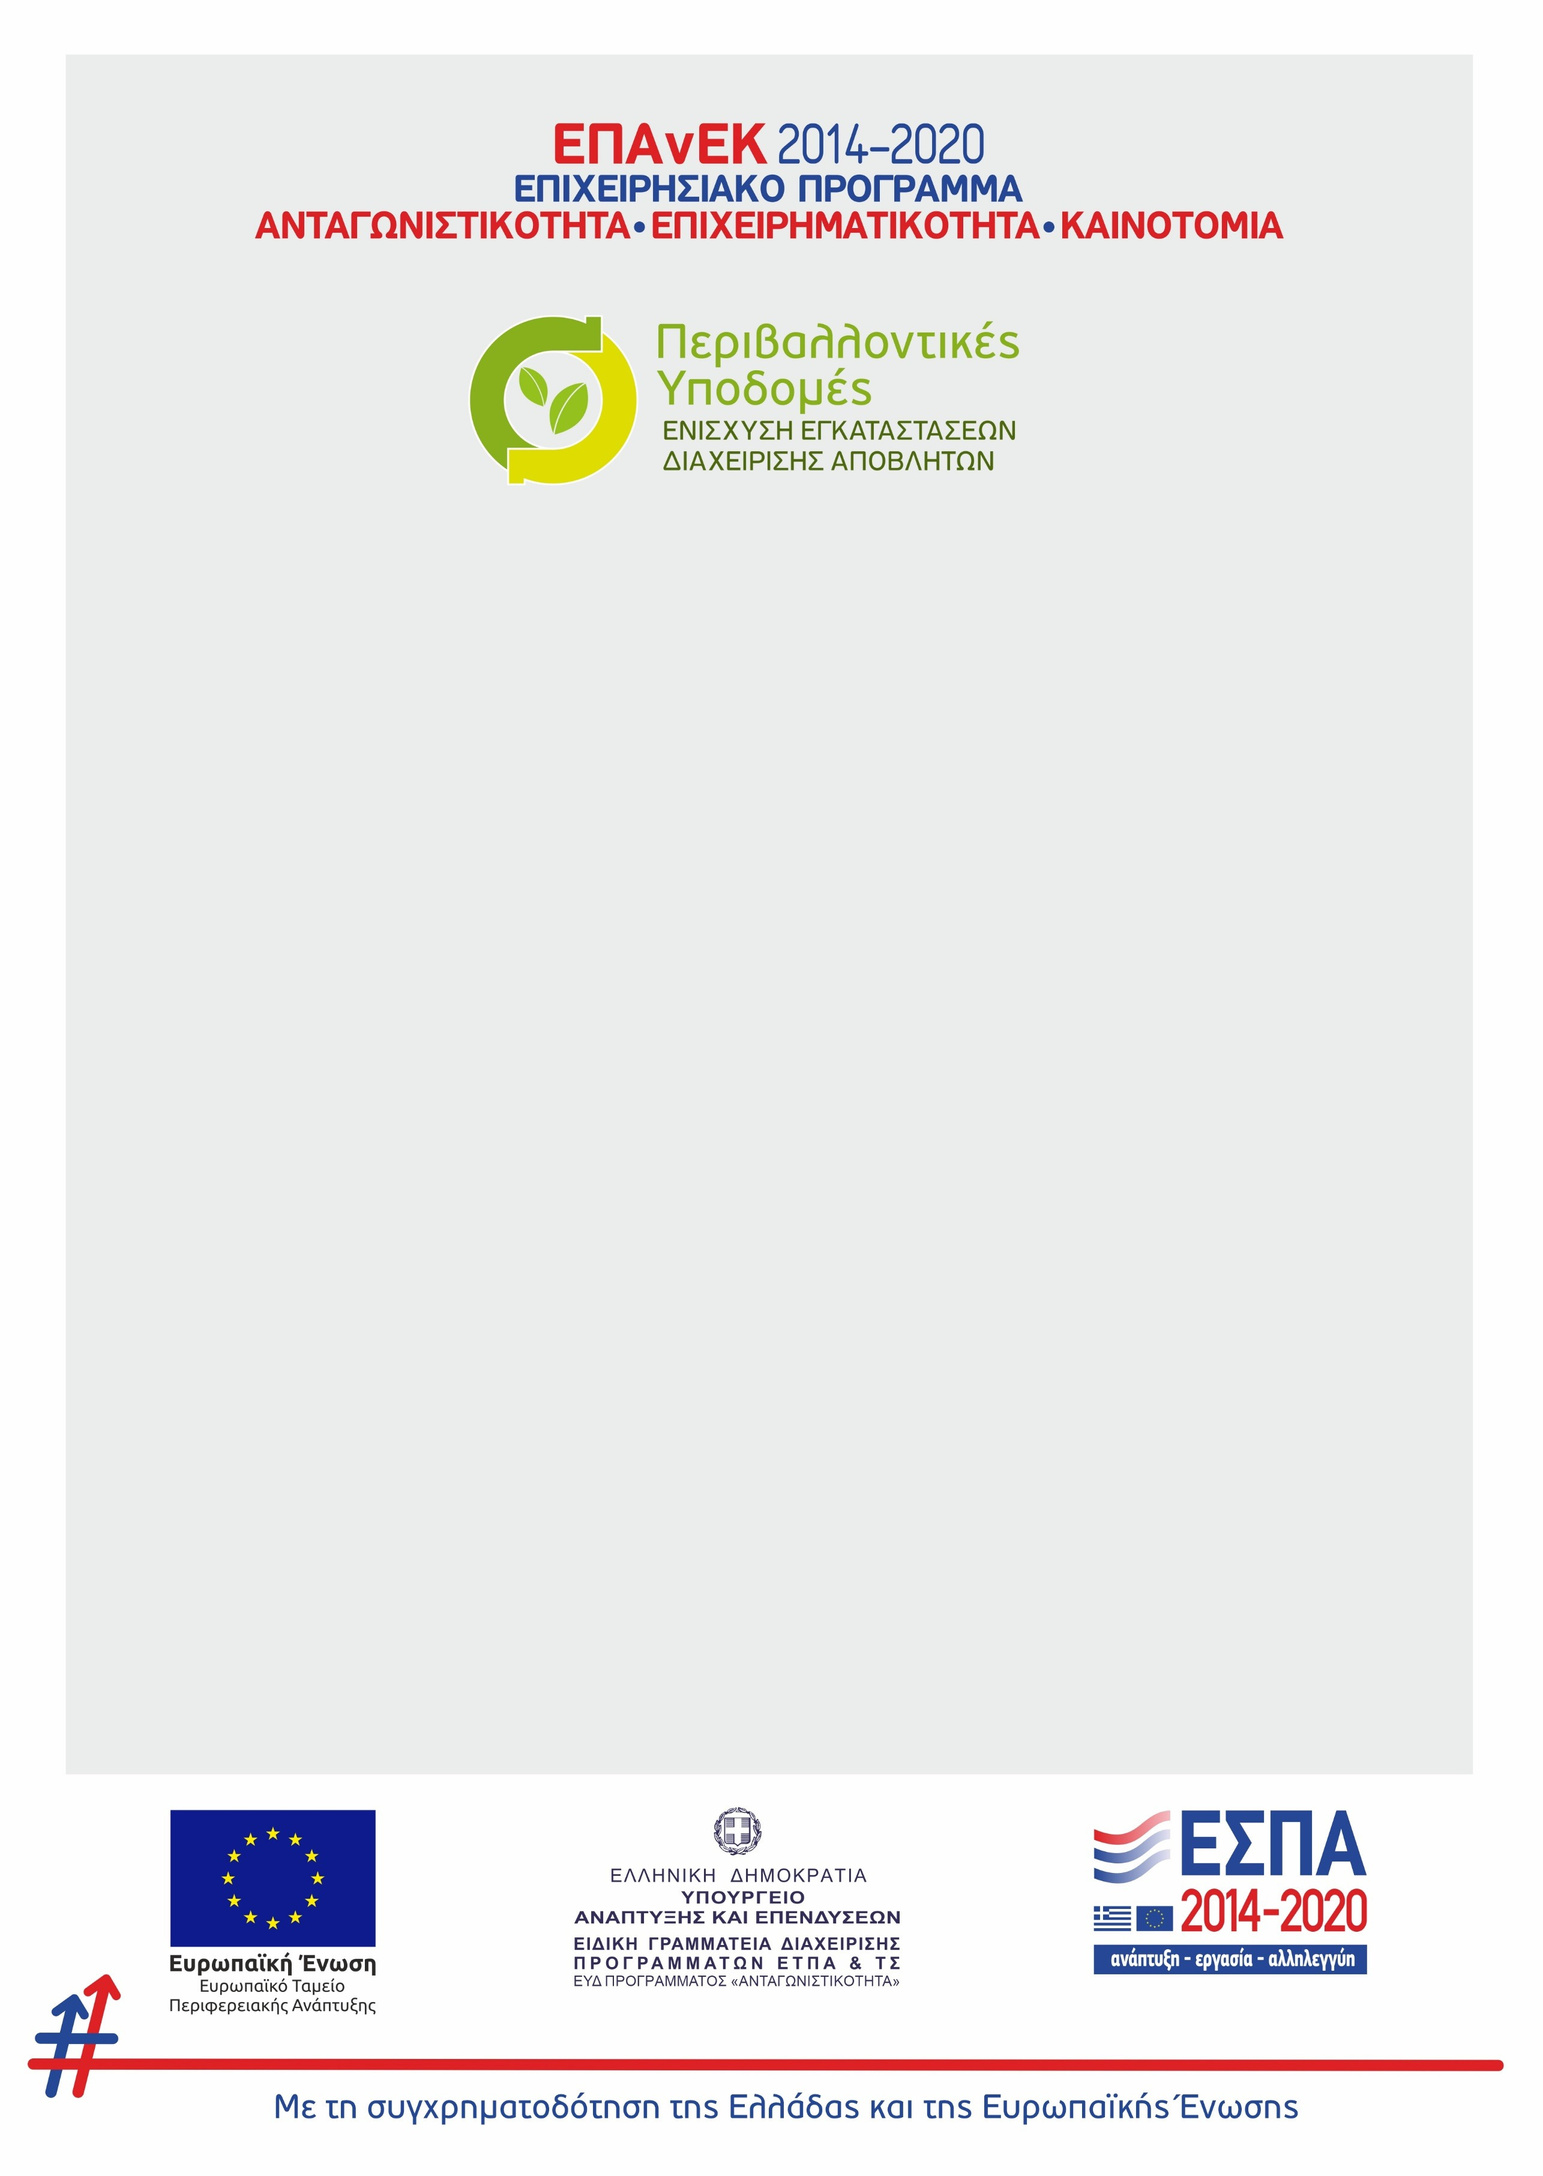 Η Thess Compost εντάχθηκε στη δράση Περιβαλλοντικές Υποδομές, προϋπολογισμού 40 εκατομμυρίων ευρώ. Ο προϋπολογισμός της επένδυσης είναι 500 χιλιάδες ευρώ, εκ των οποίων η δημόσια δαπάνη ανέρχεται σε 273 χιλιάδες από την Ελλάδα και το Ευρωπαϊκό Ταμείο